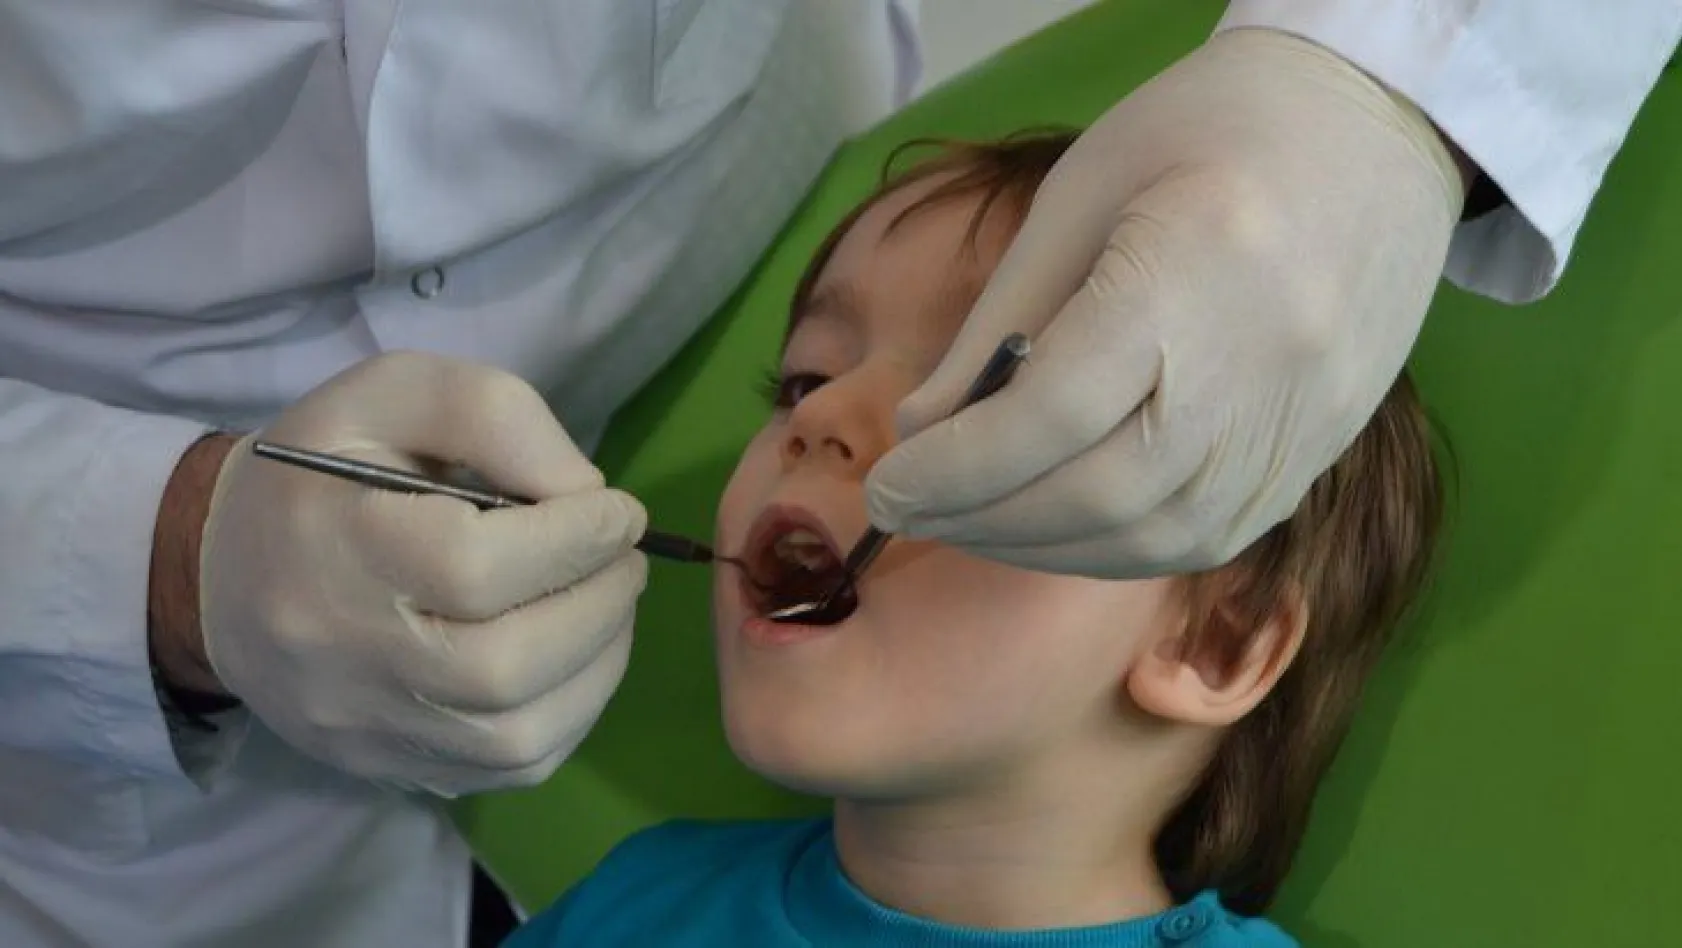 Çocuklarda diş sağlığına dikkat